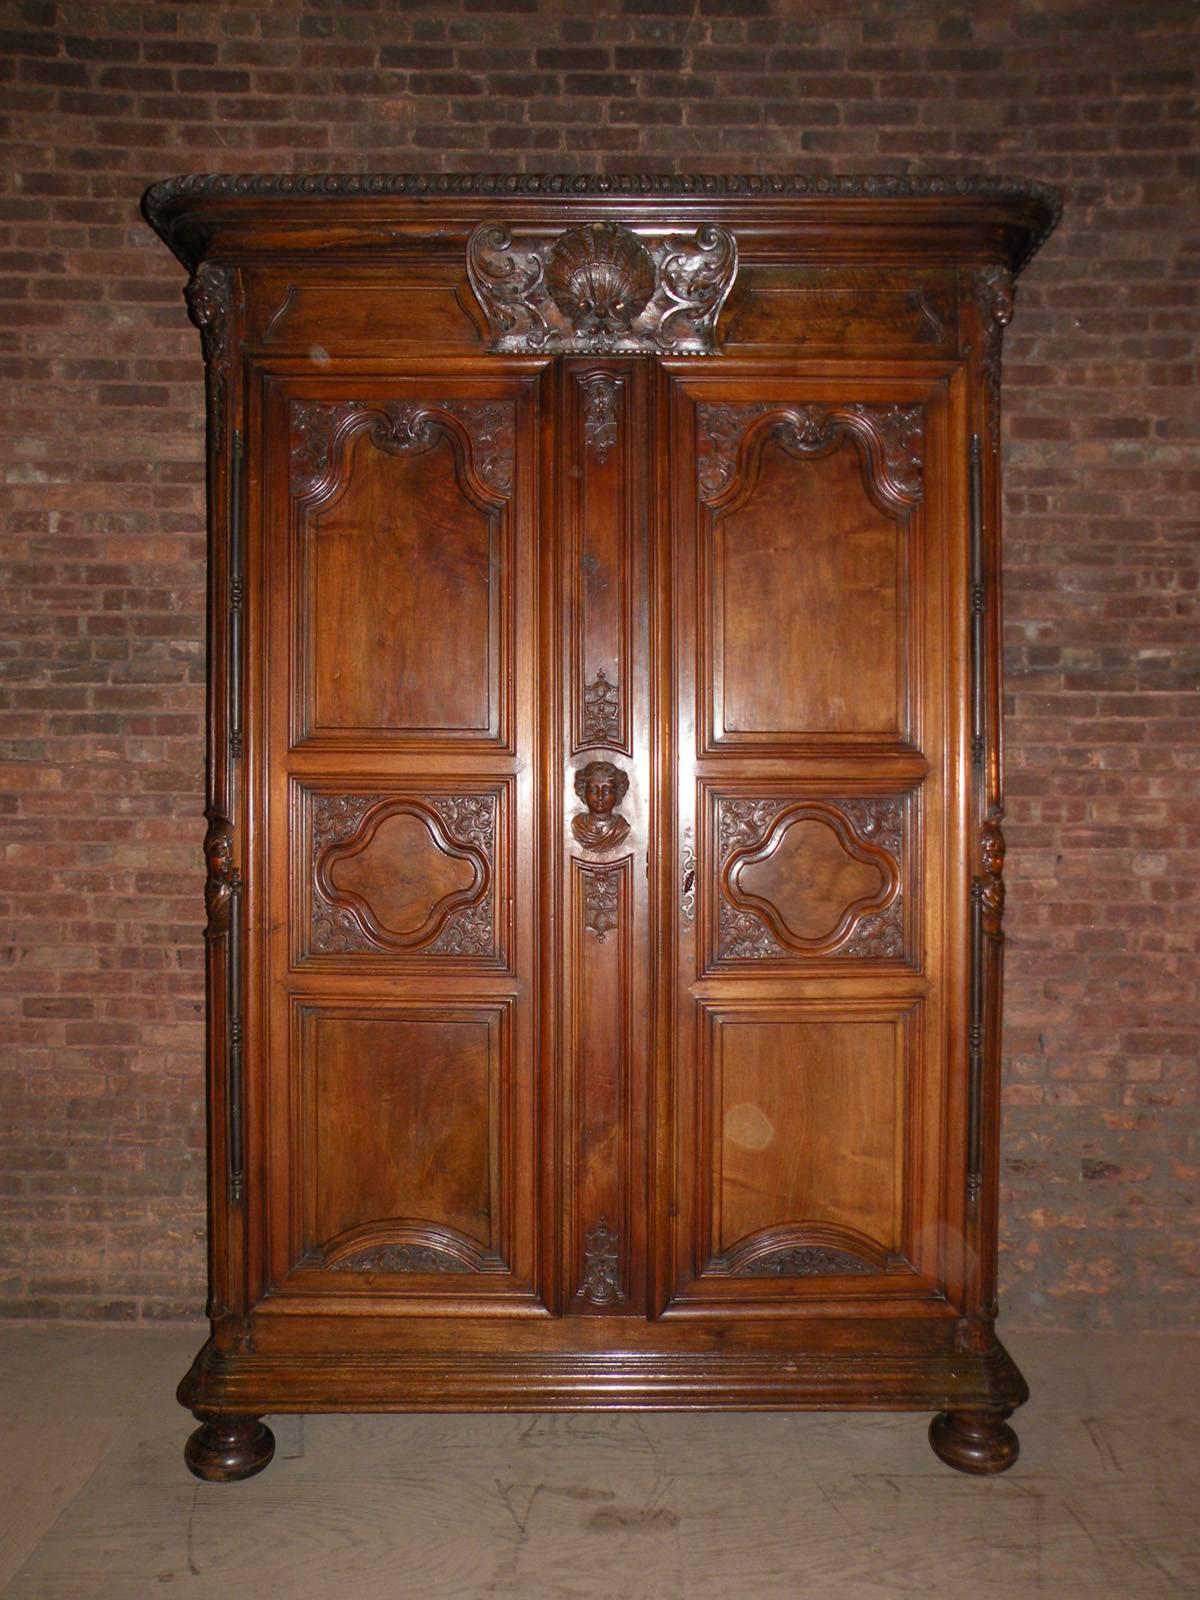 Sehr großer Louis XIV-Schrank von außergewöhnlicher Qualität und Größe. Die beiden massiven Türen sind mit einem schönen, komplizierten Schließmechanismus aus Stahl ausgestattet. Der untere Teil ist mit Schubladen ausgestattet, der obere Teil kann